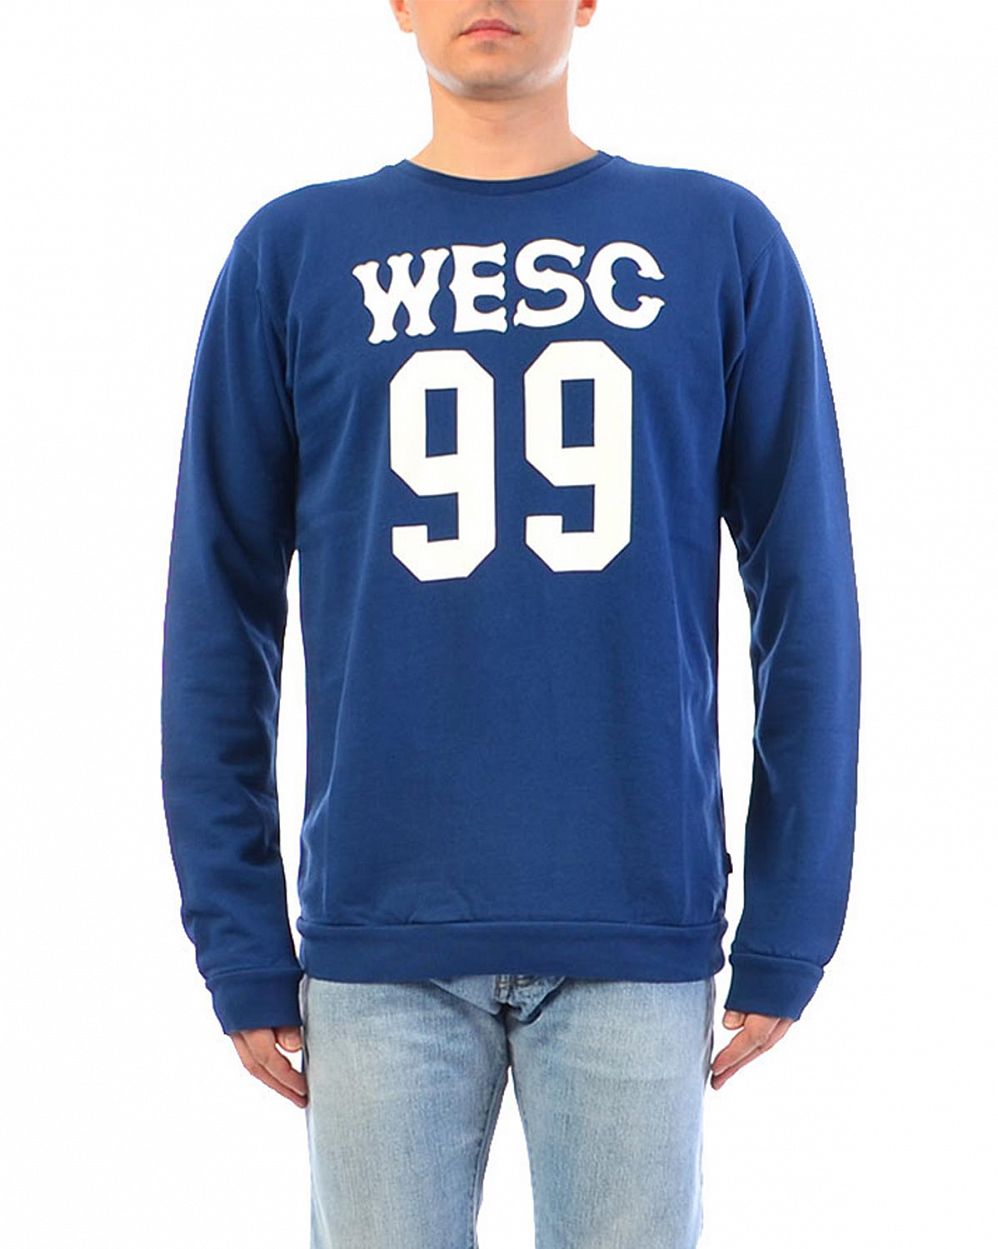 Толстовка мужская свитшот WeSC Club Estate Blue отзывы